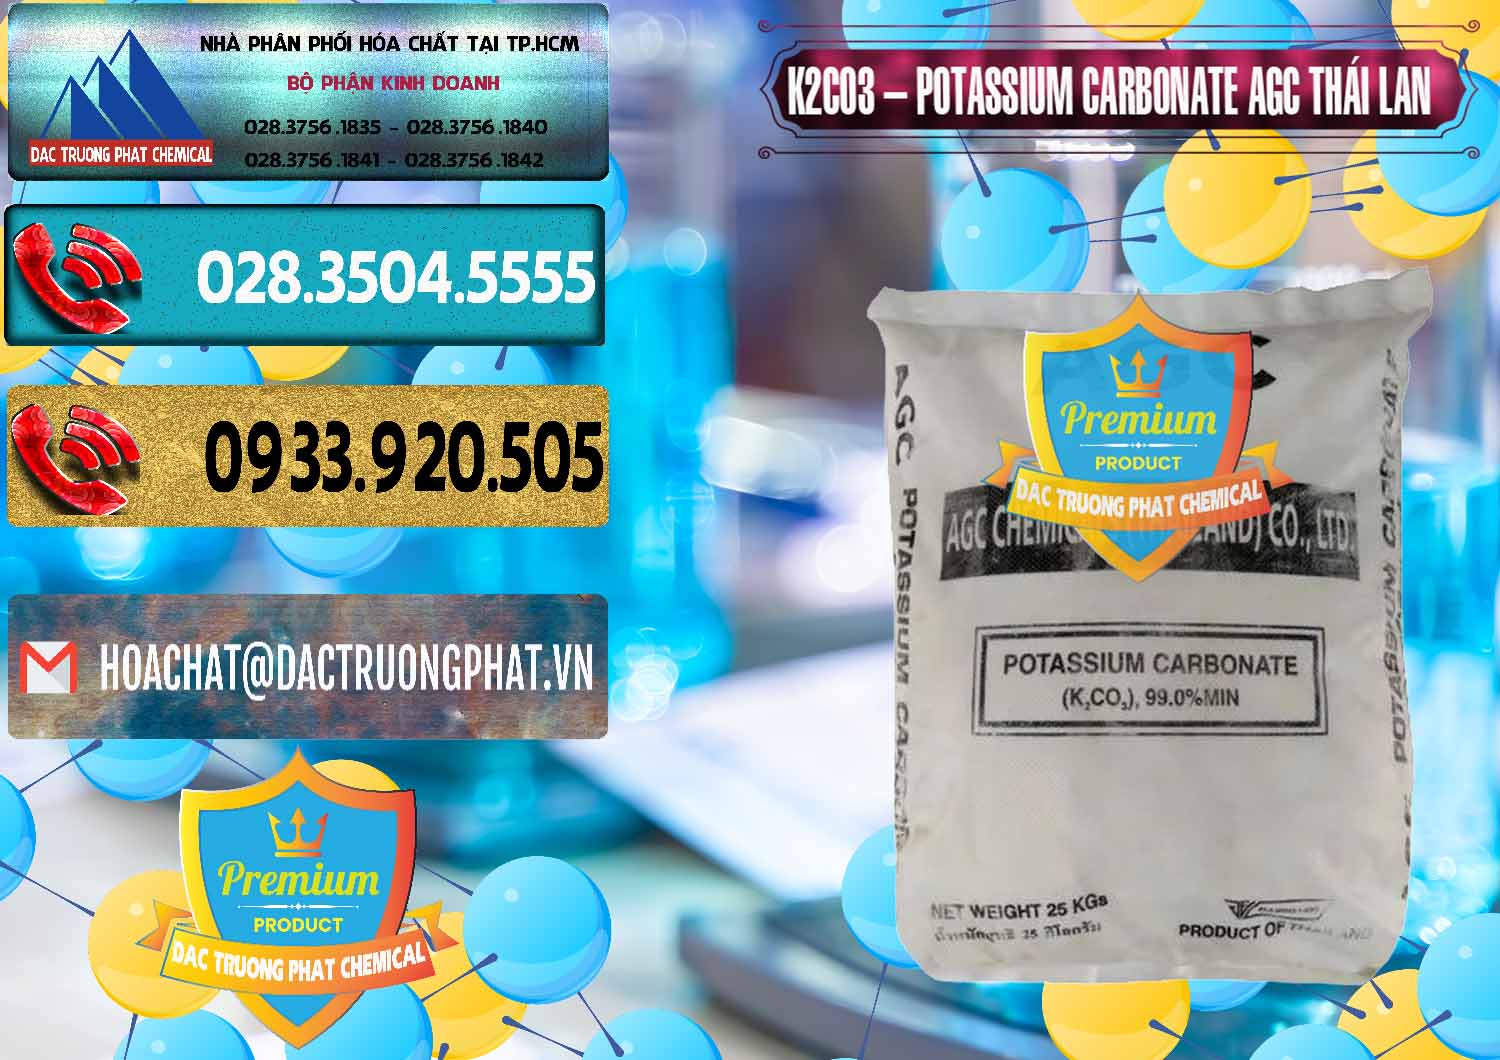 Nơi chuyên bán và phân phối K2Co3 – Potassium Carbonate AGC Thái Lan Thailand - 0471 - Đơn vị chuyên cung cấp ( bán ) hóa chất tại TP.HCM - hoachatdetnhuom.com